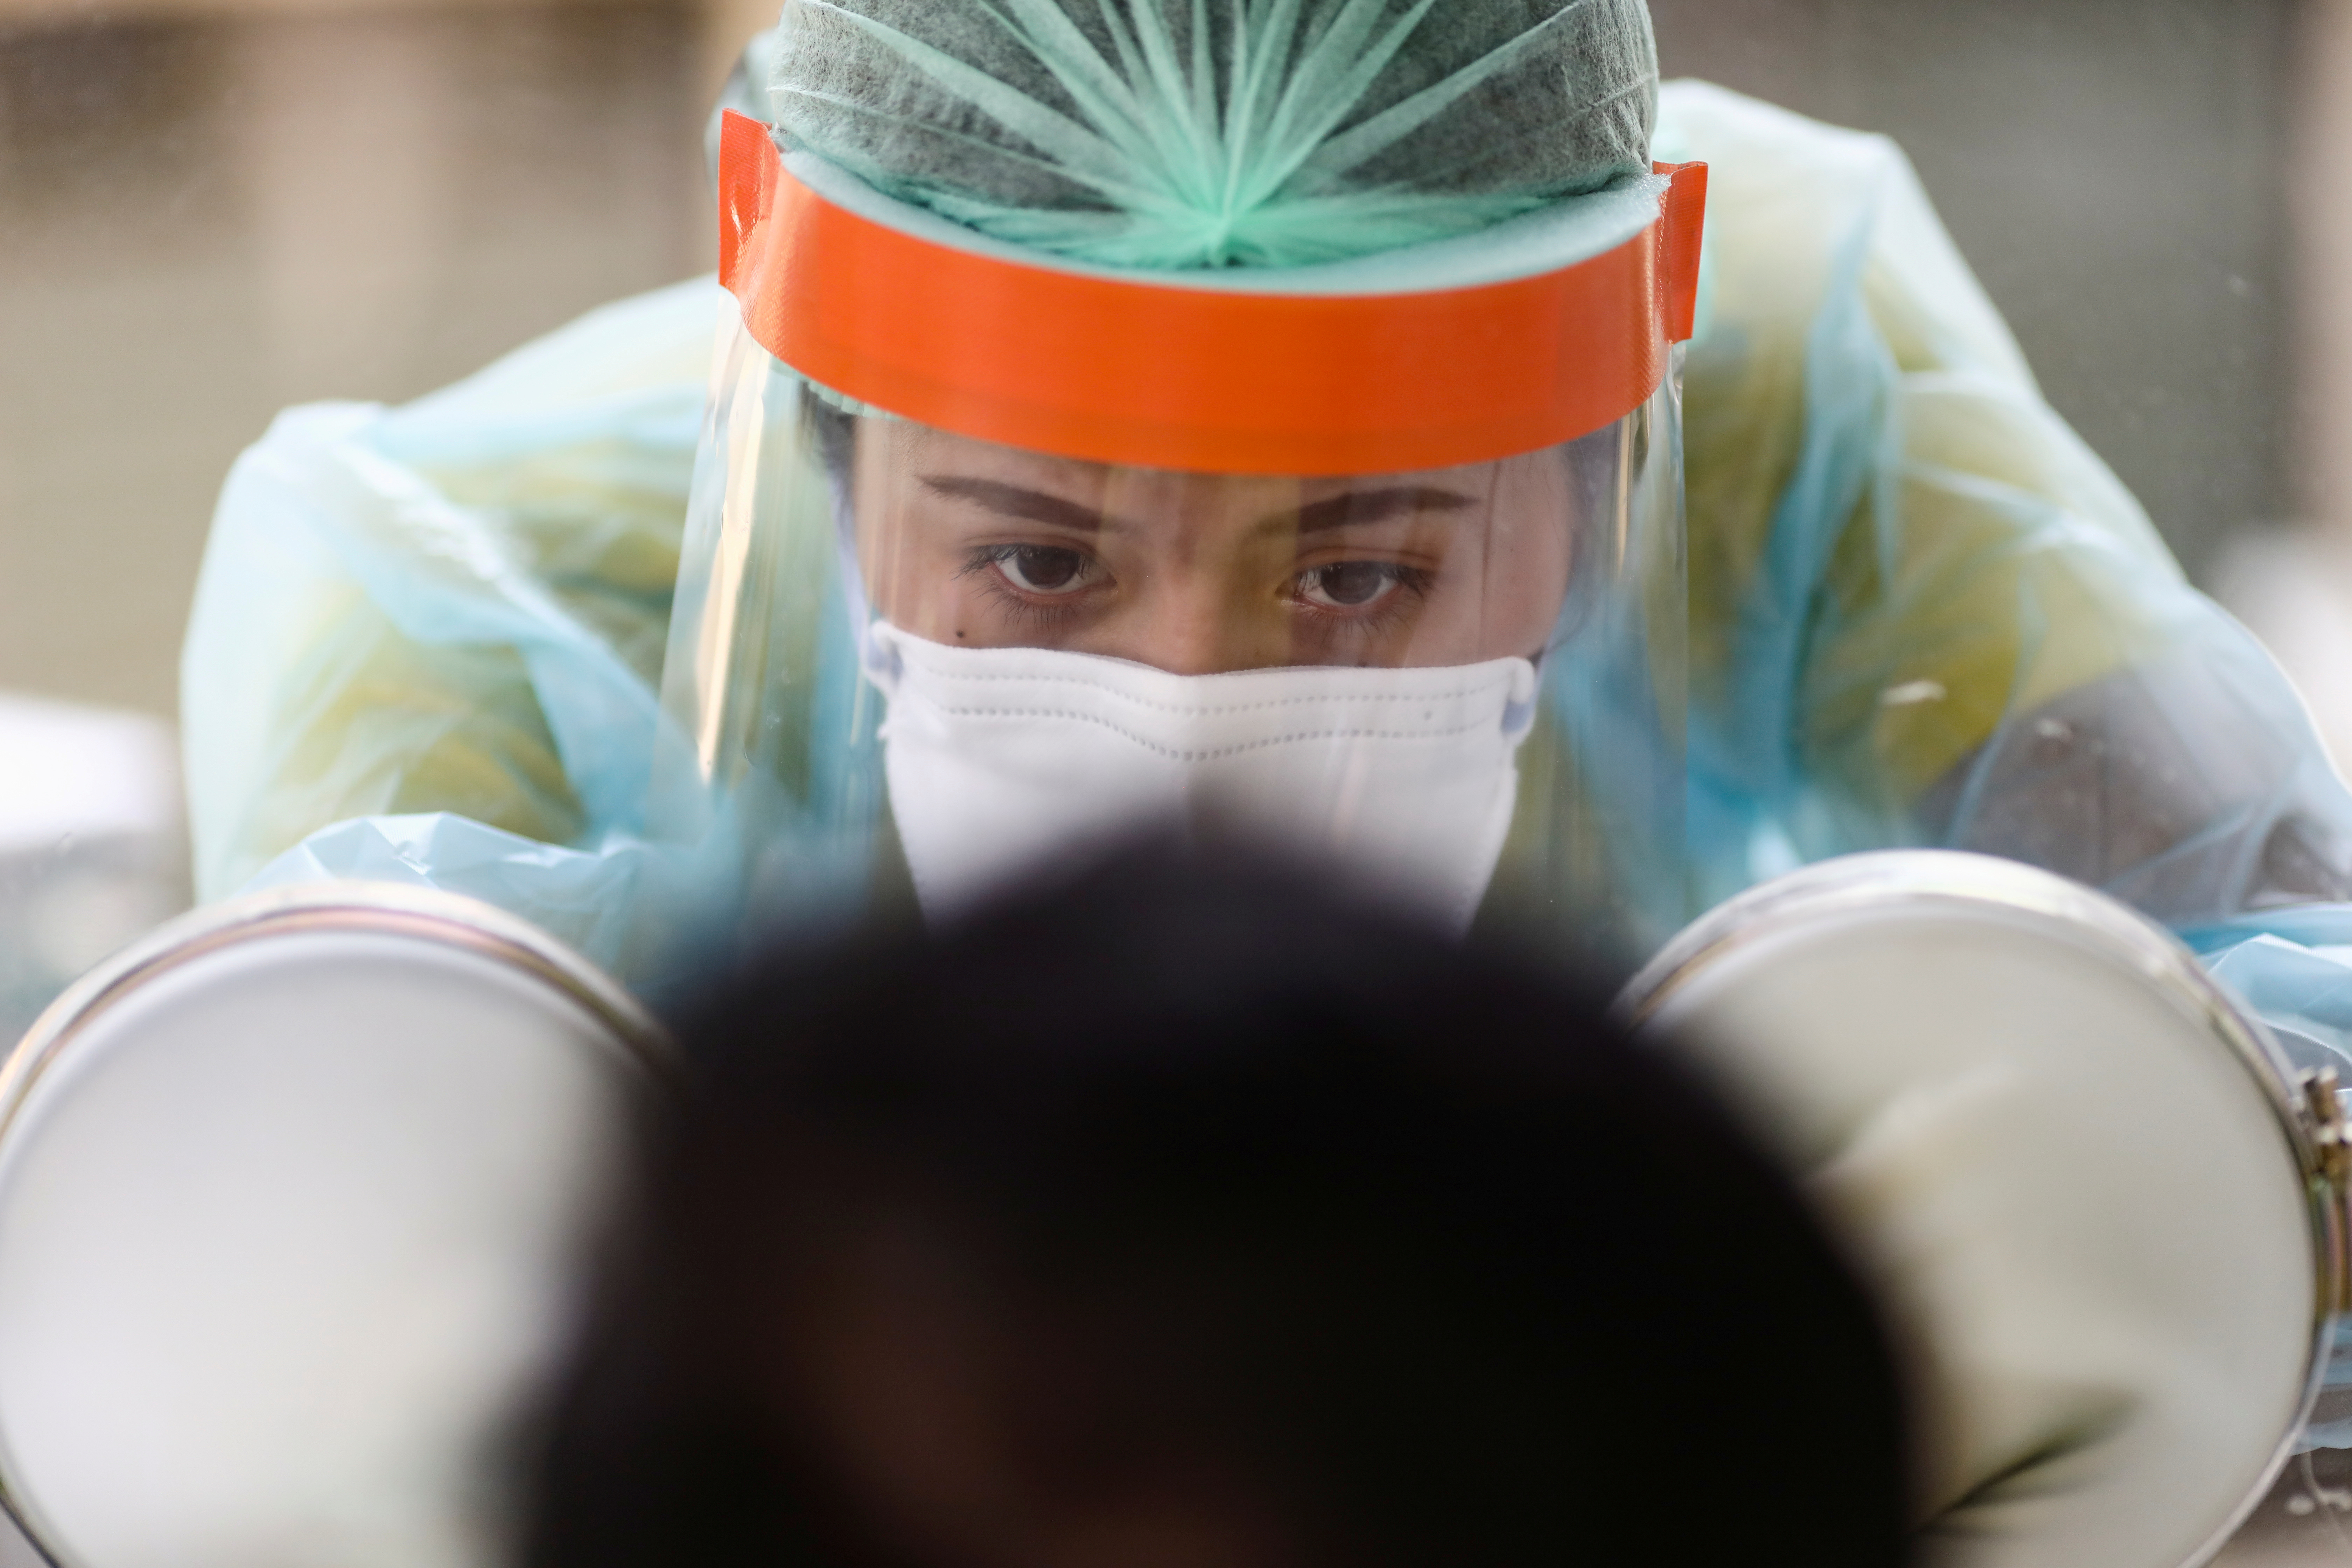 Nuevos estudios científicos deberán profundizar y confirmar las reinfecciones por coronavirus - REUTERS/Athit Perawongmetha/File Photo